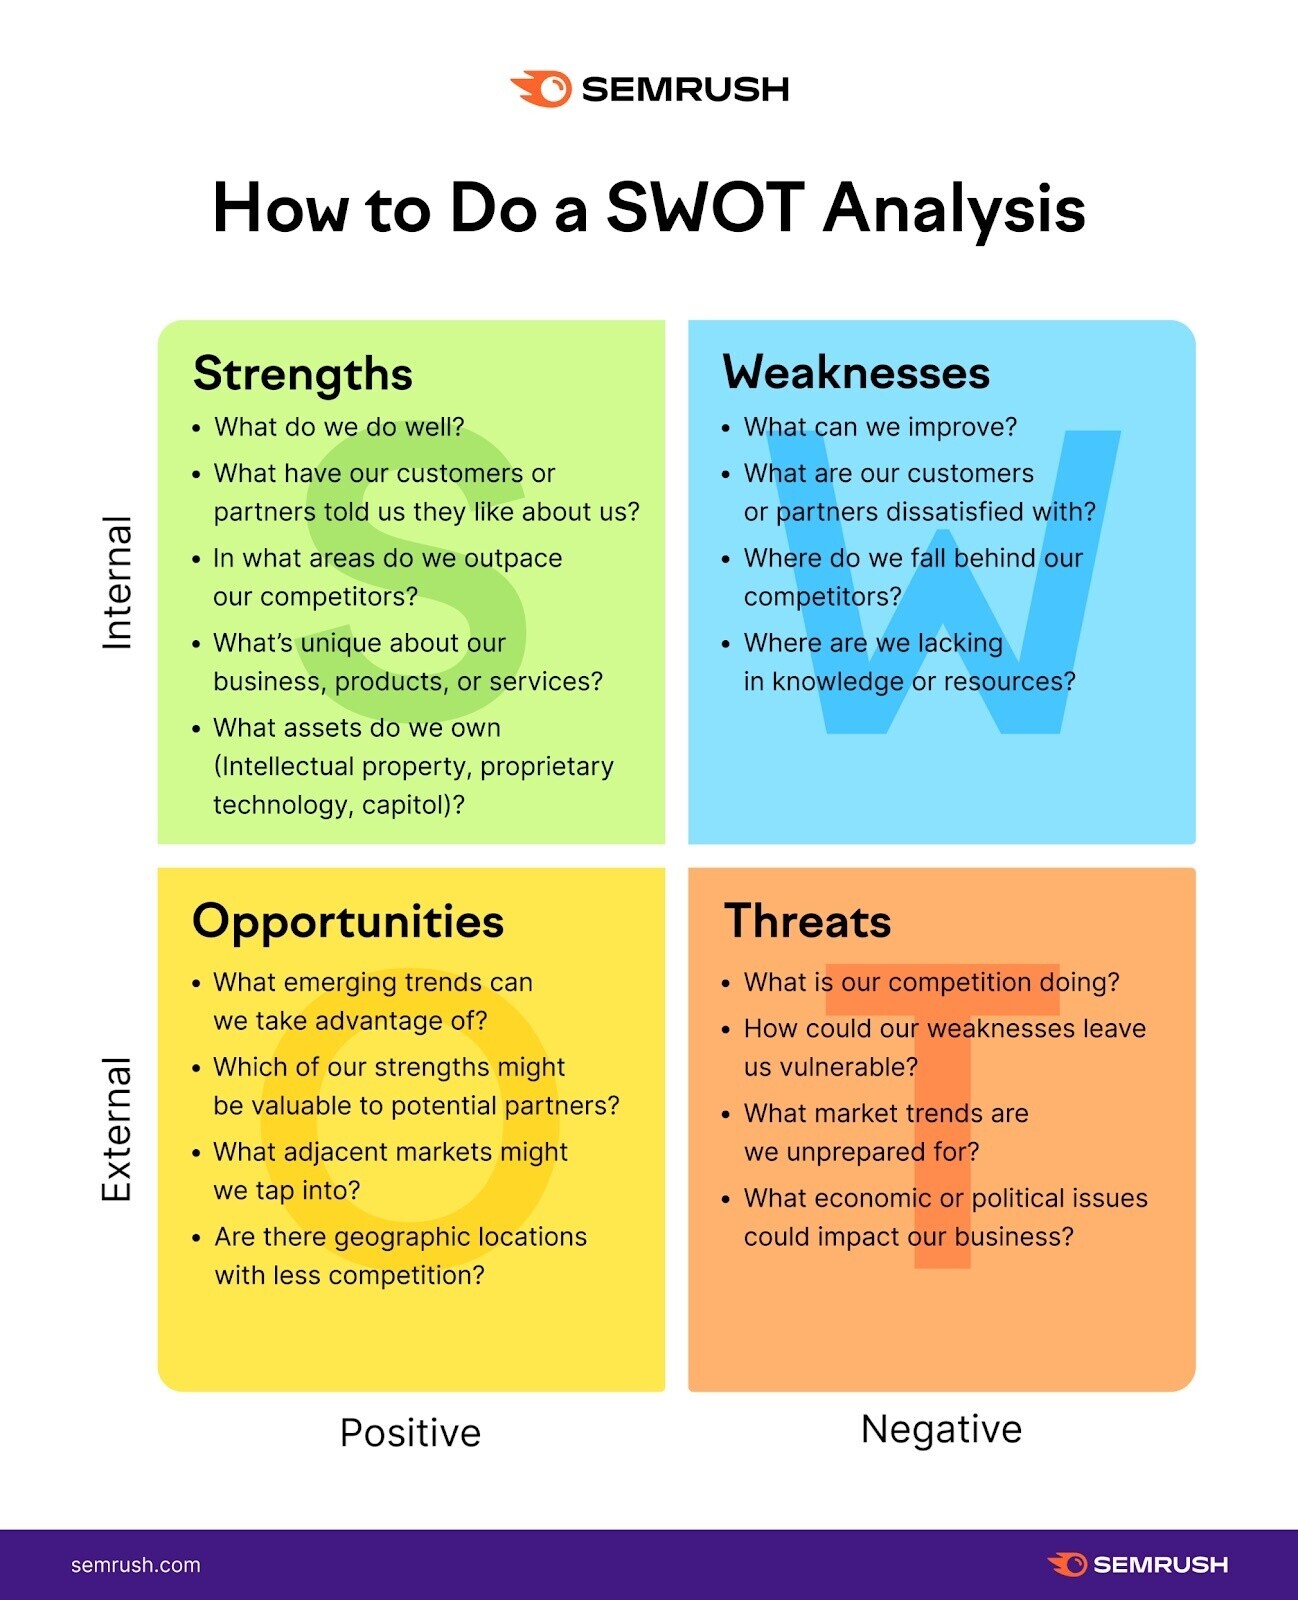 A visual explaining how to do a SWOT analysis